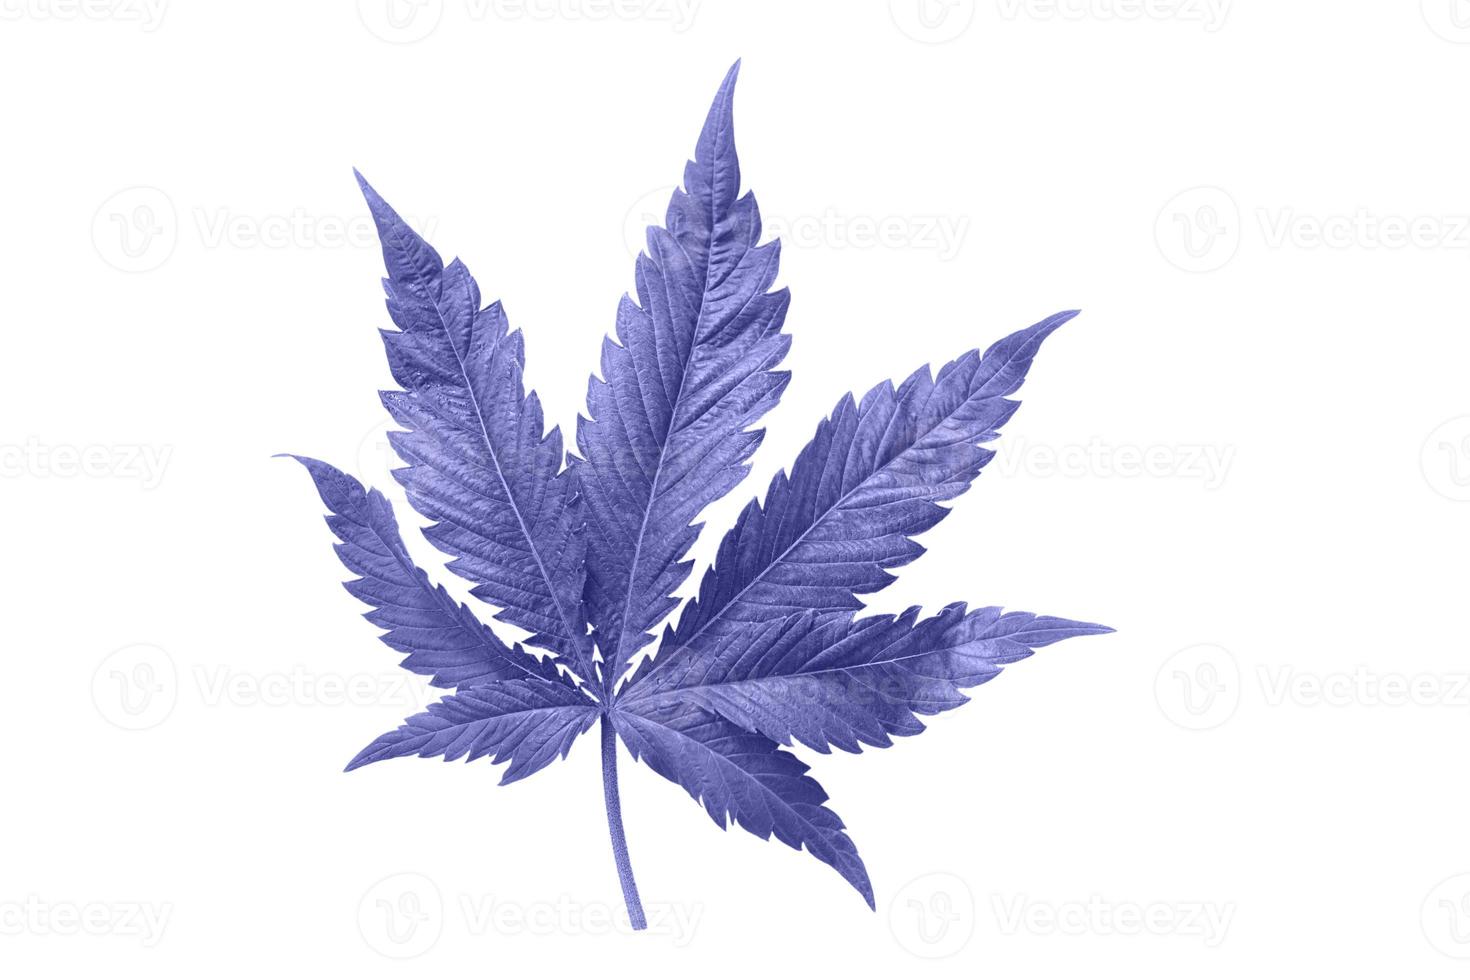 hoja de cannabis sobre un fondo blanco aislado. Las hojas de marihuana medicinal de la variedad jack herer son un híbrido de sativa e indica. foto